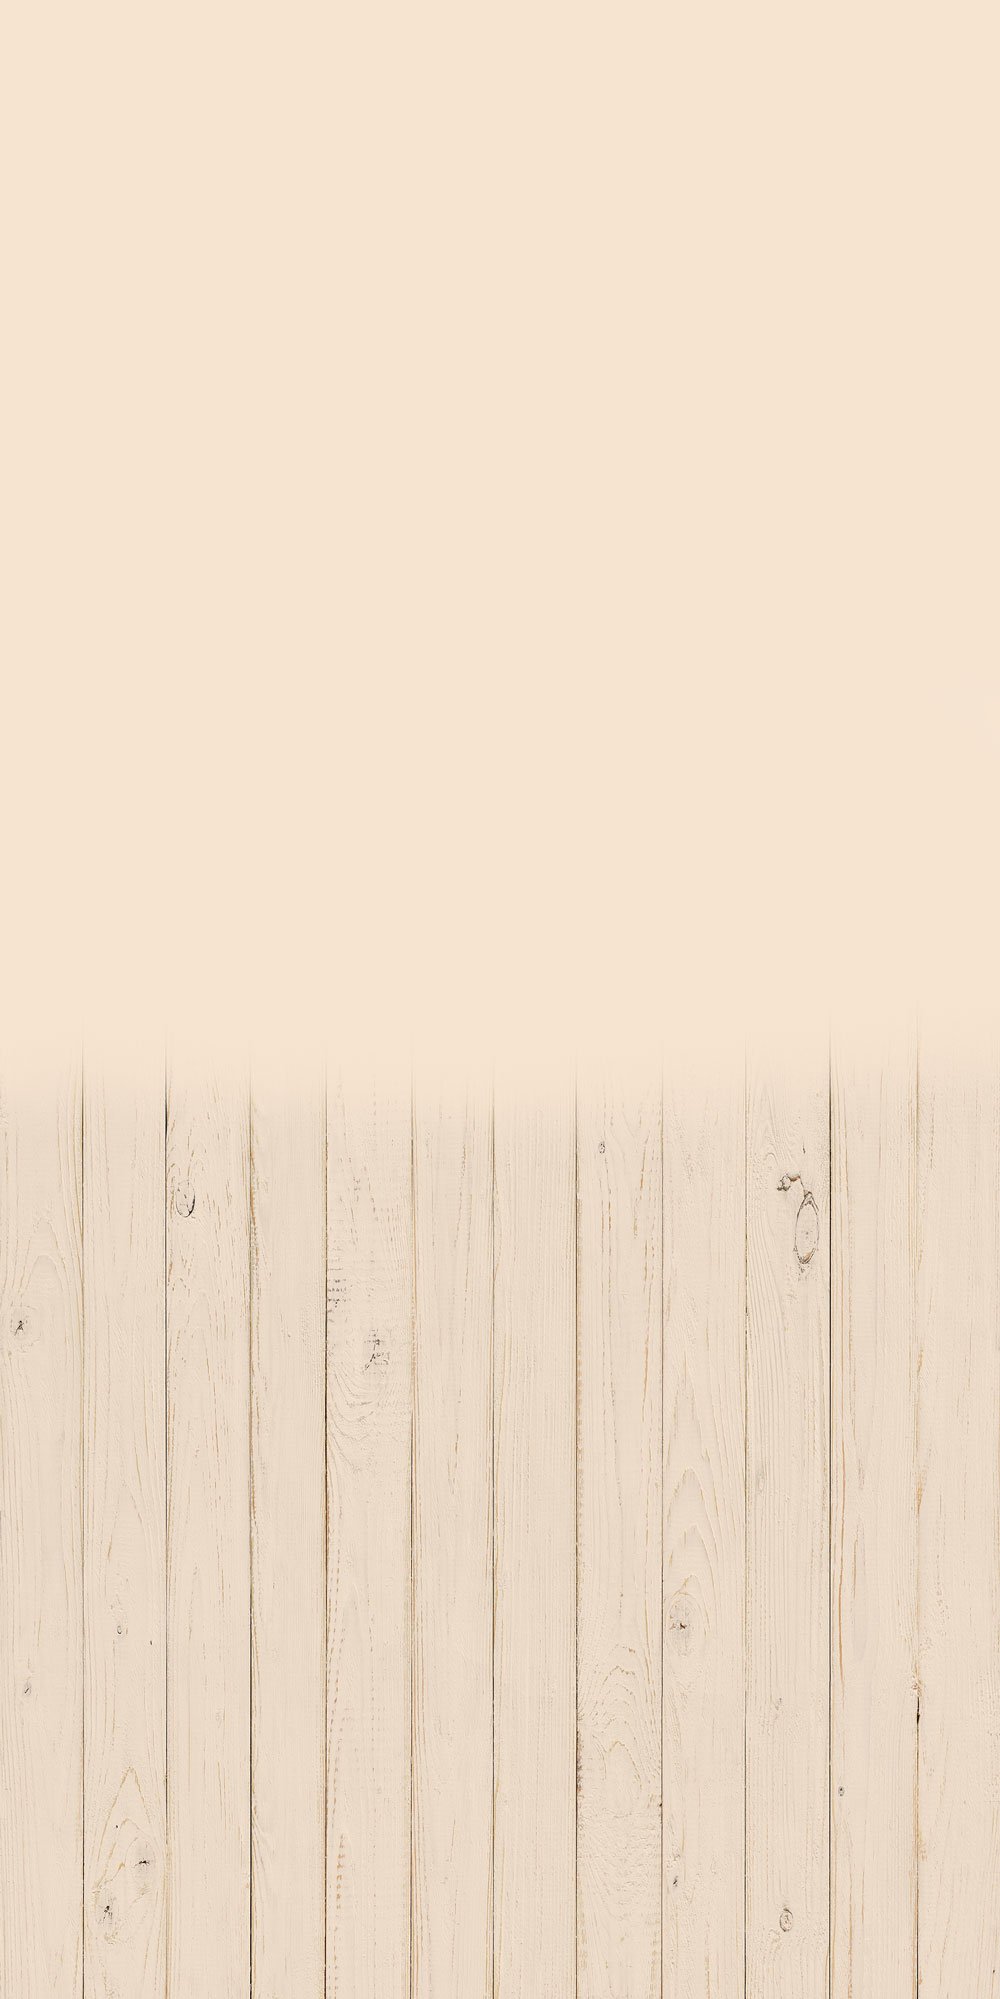 Kate Balayage la toile de fond de plancher en bois crème solide pour la photographie